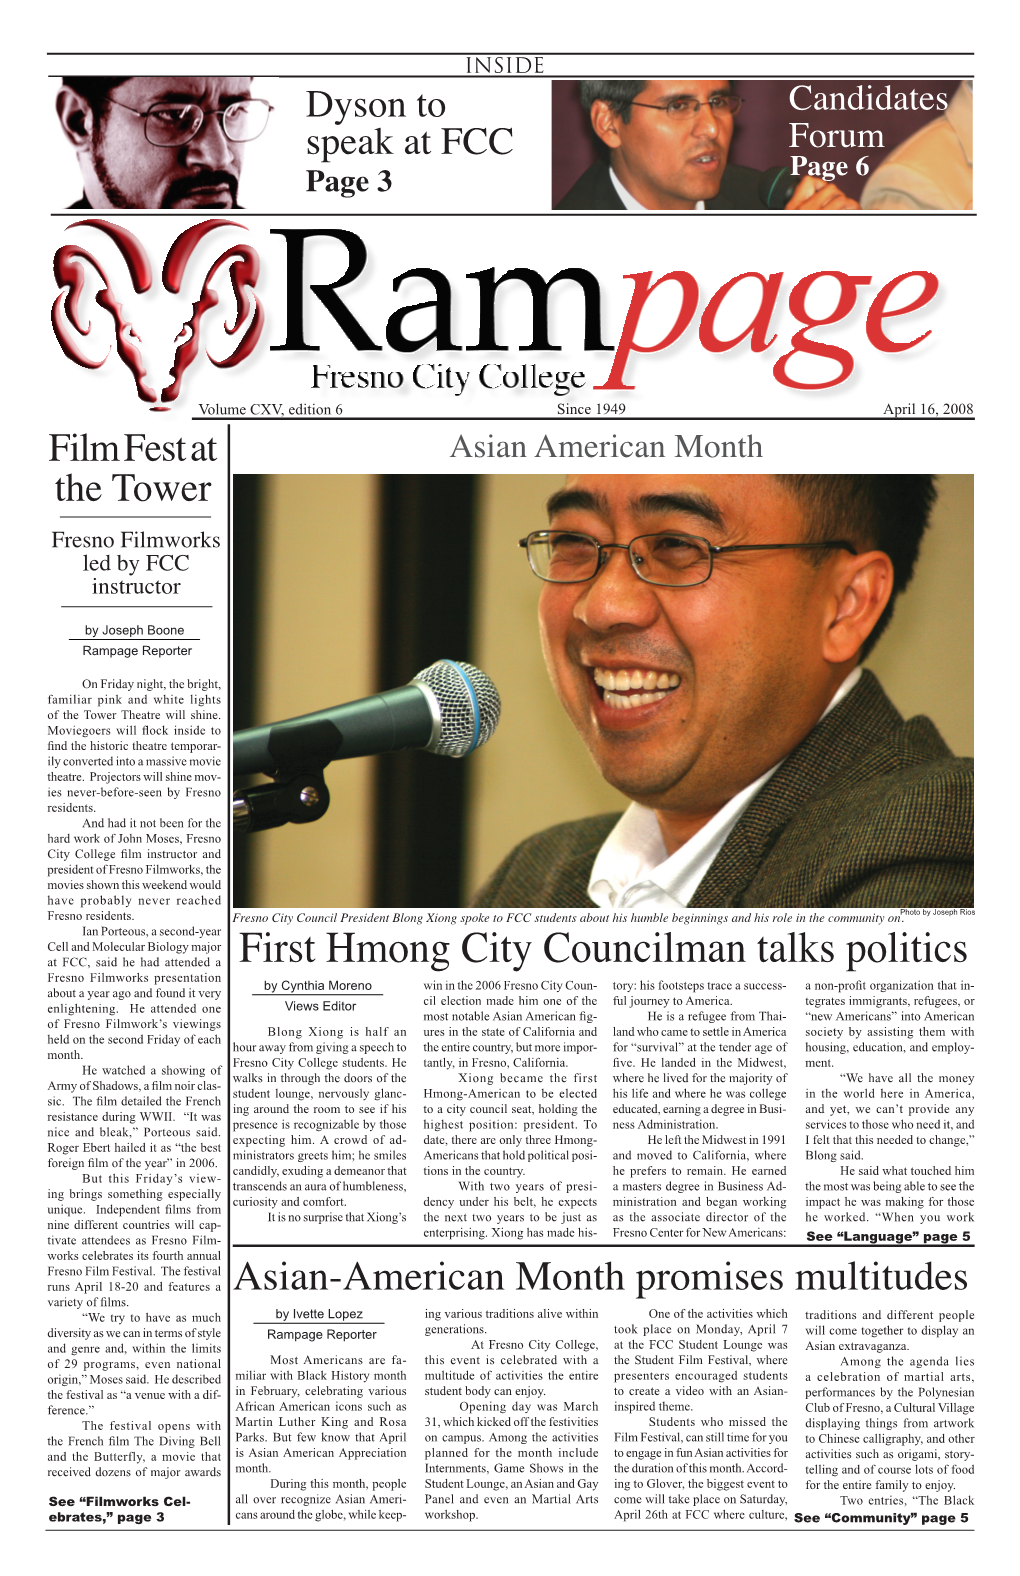 First Hmong City Councilman Talks Politics